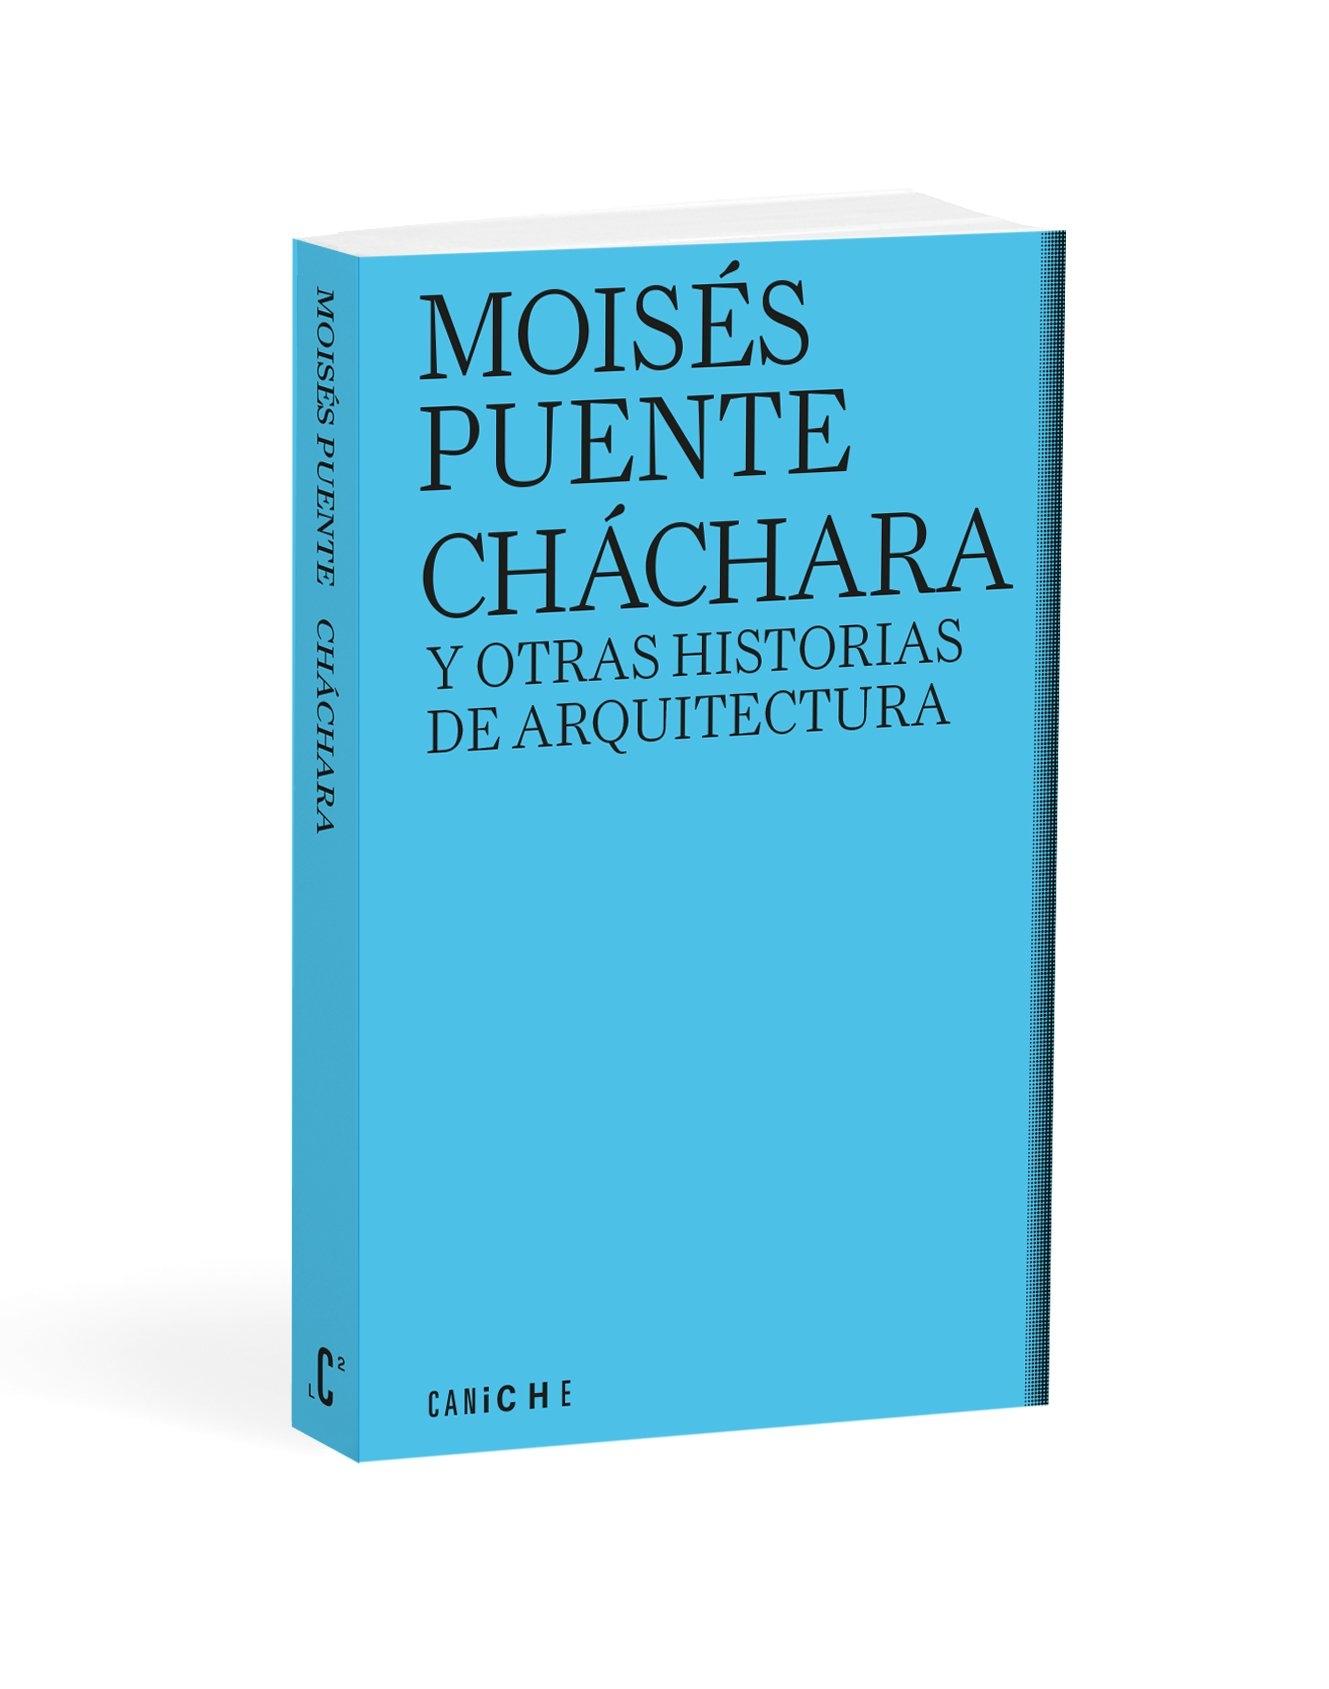 CHACHARA Y OTRAS HISTORIAS DE ARQUITECTURA